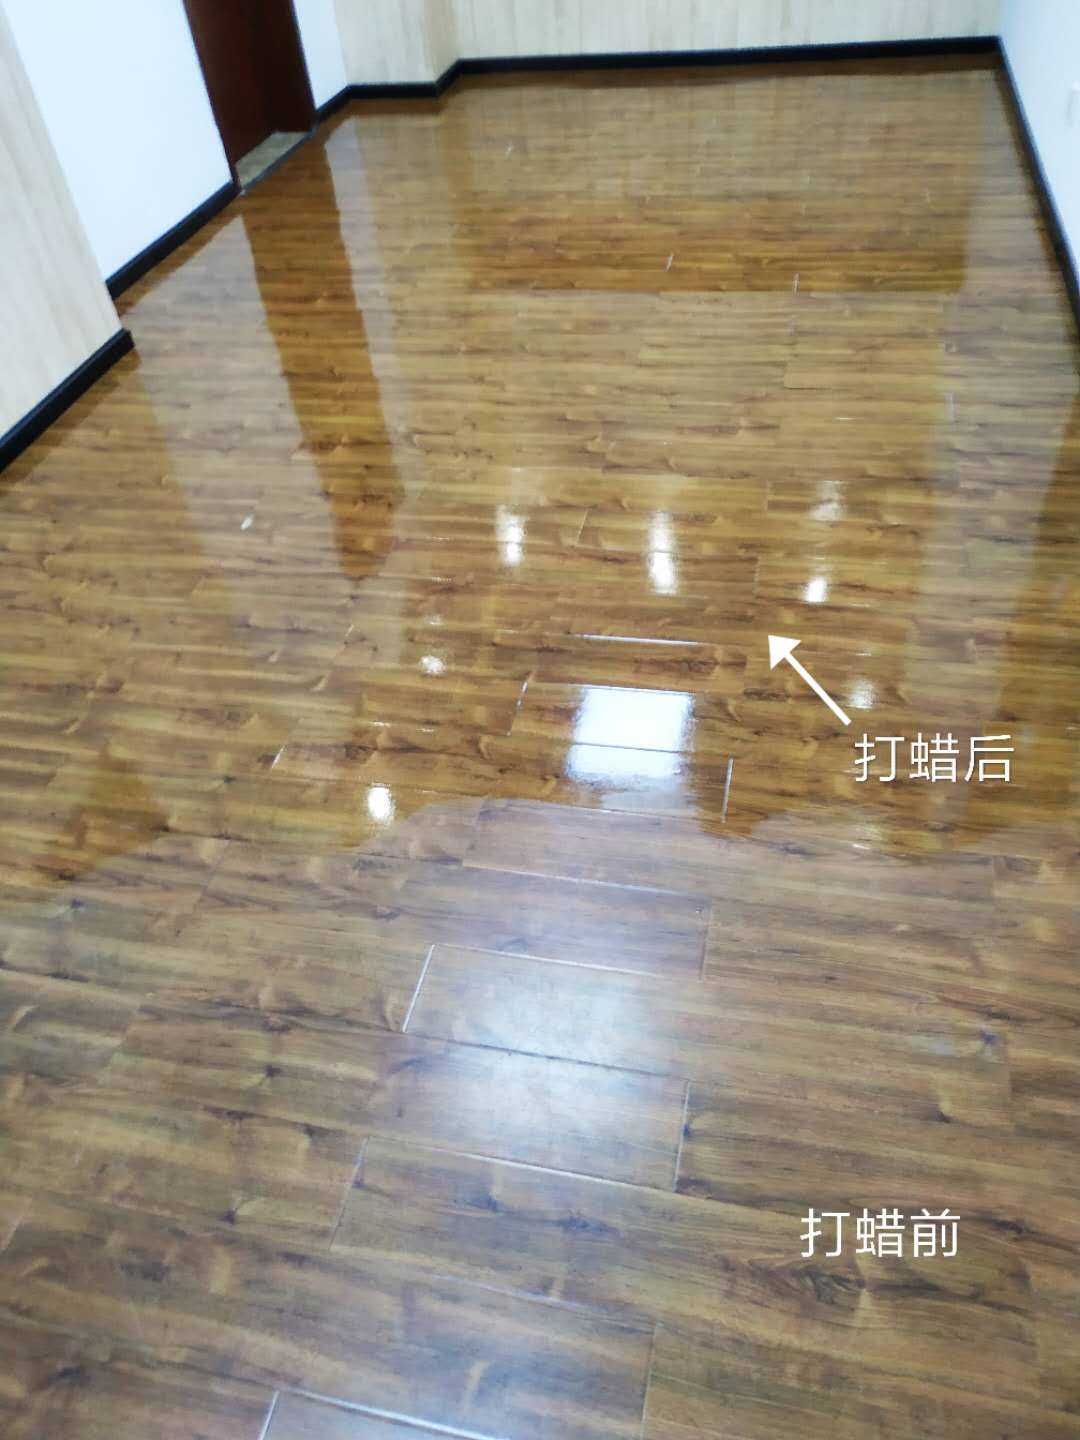 实木地板抛光打蜡 - 广州南洋保洁服务有限公司